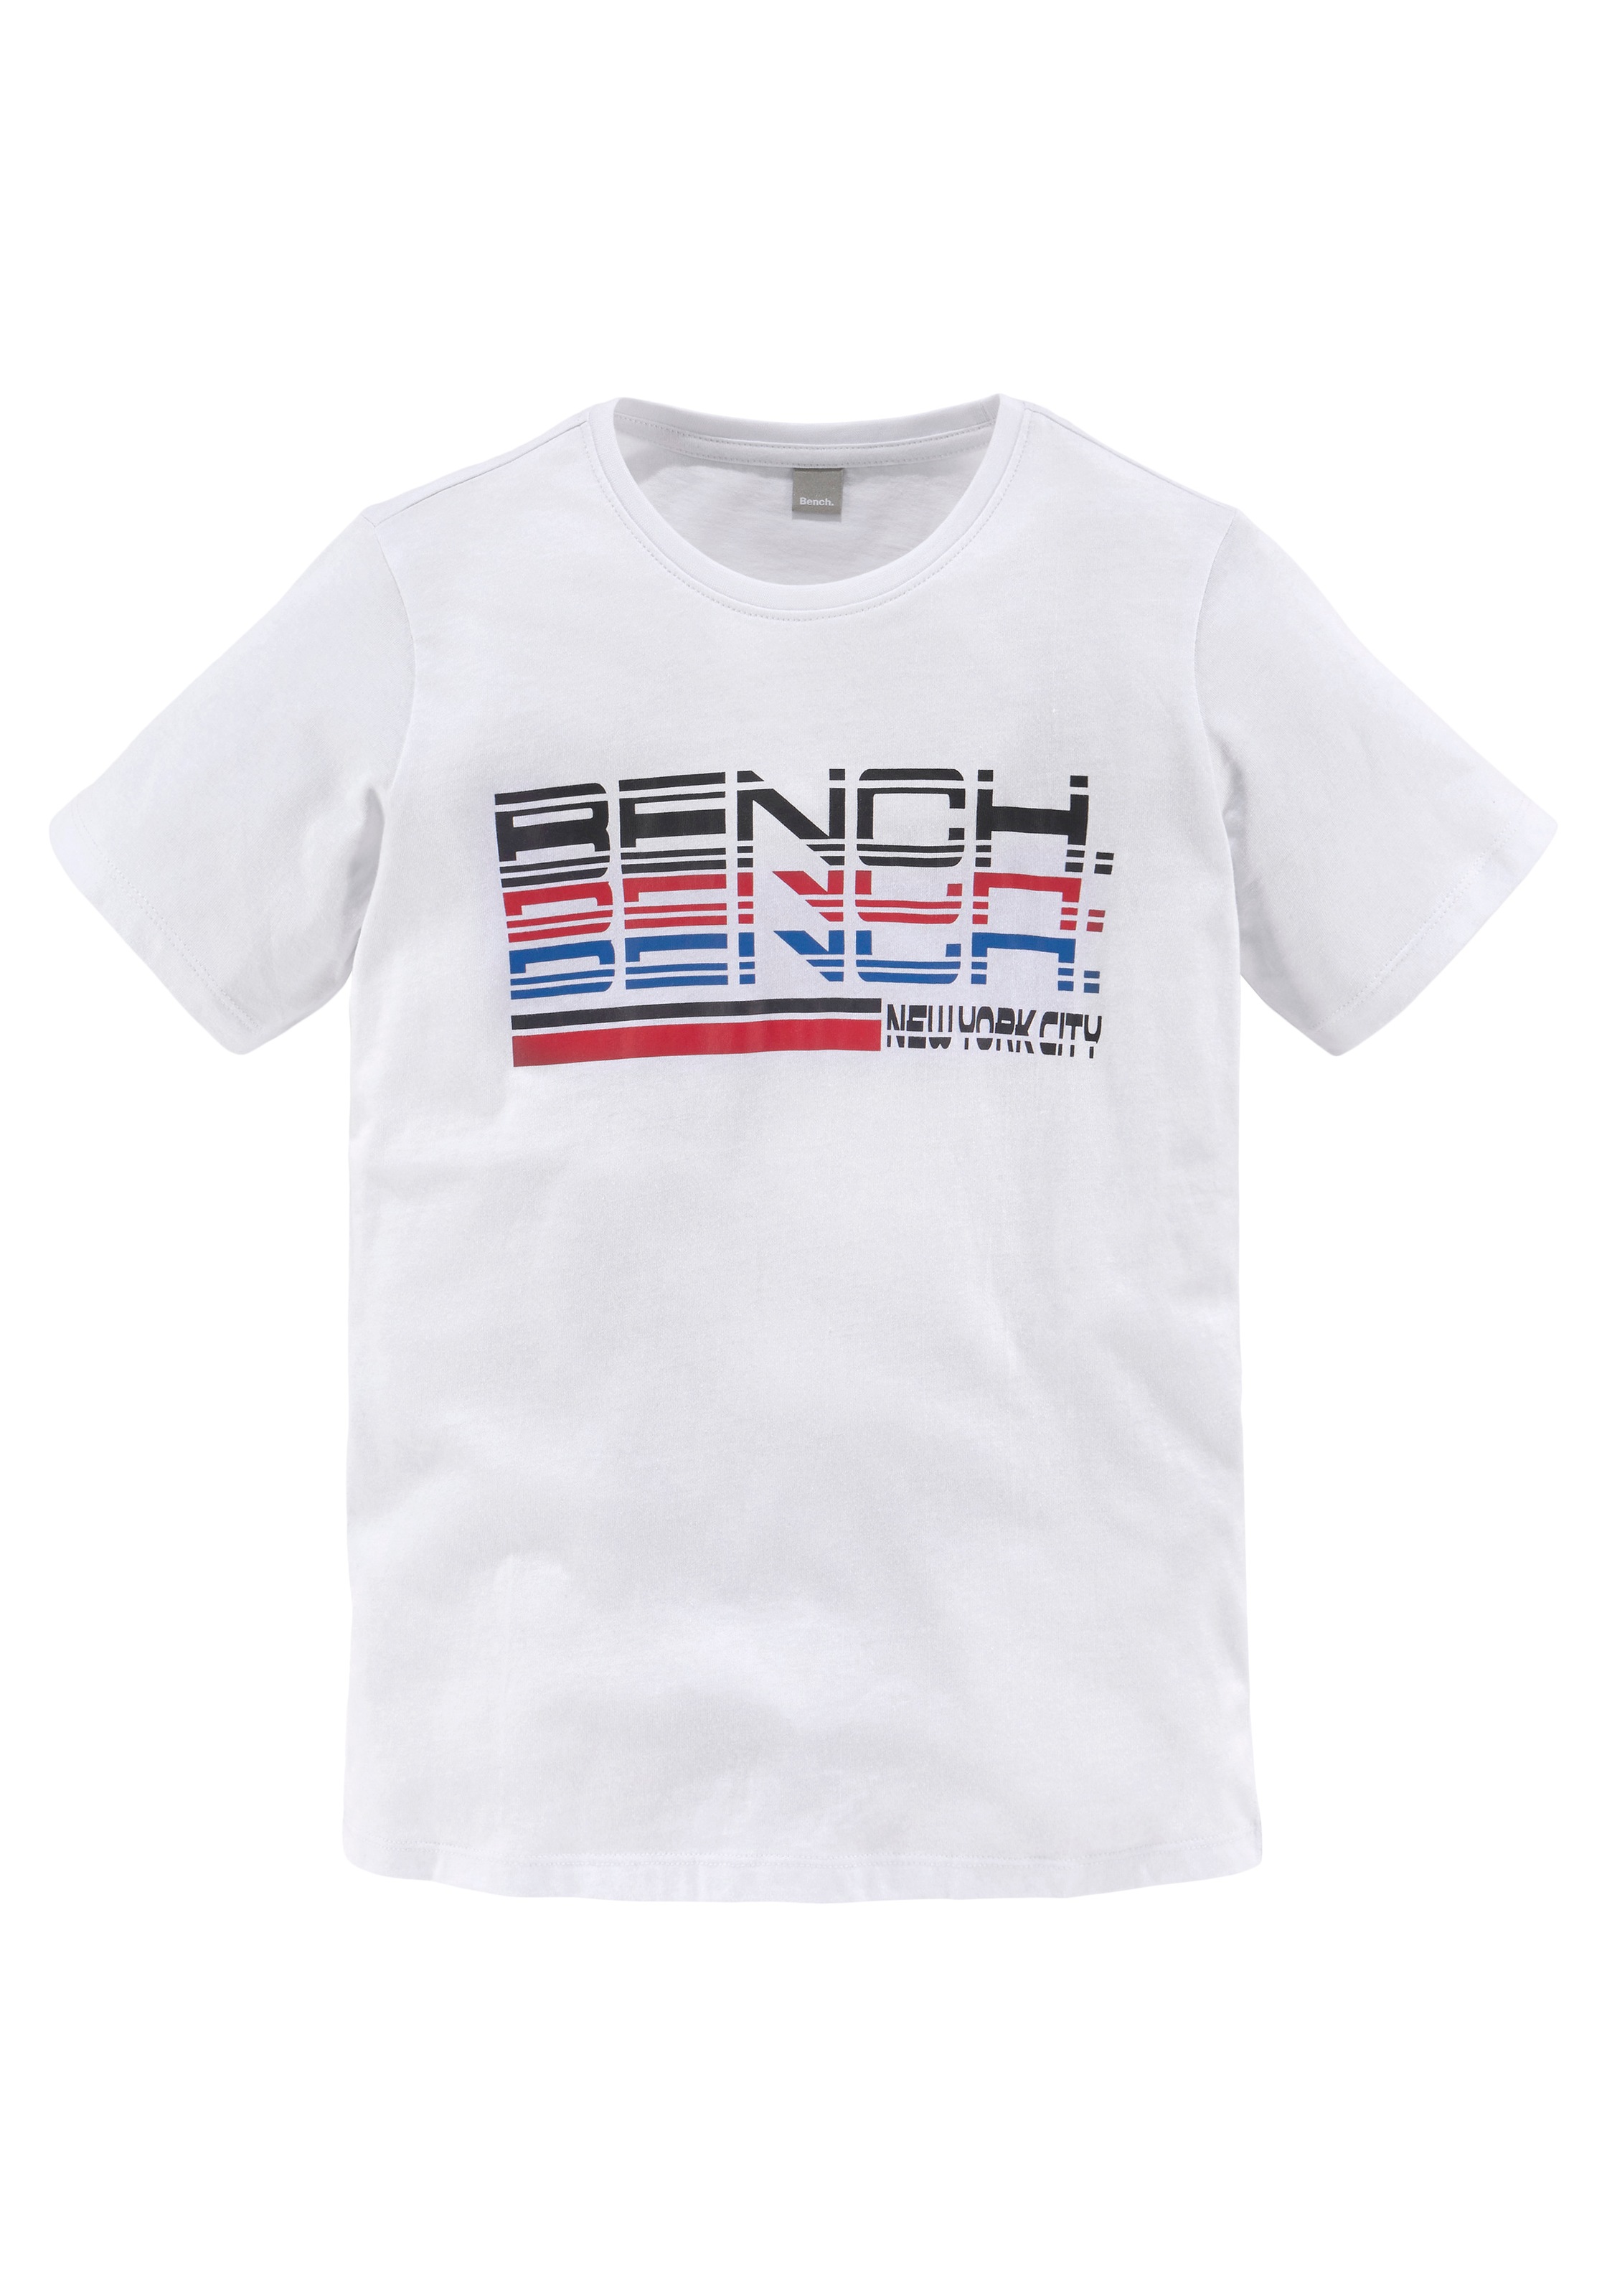 T-Shirt, Bench. trendiger Logoprint bei OTTO